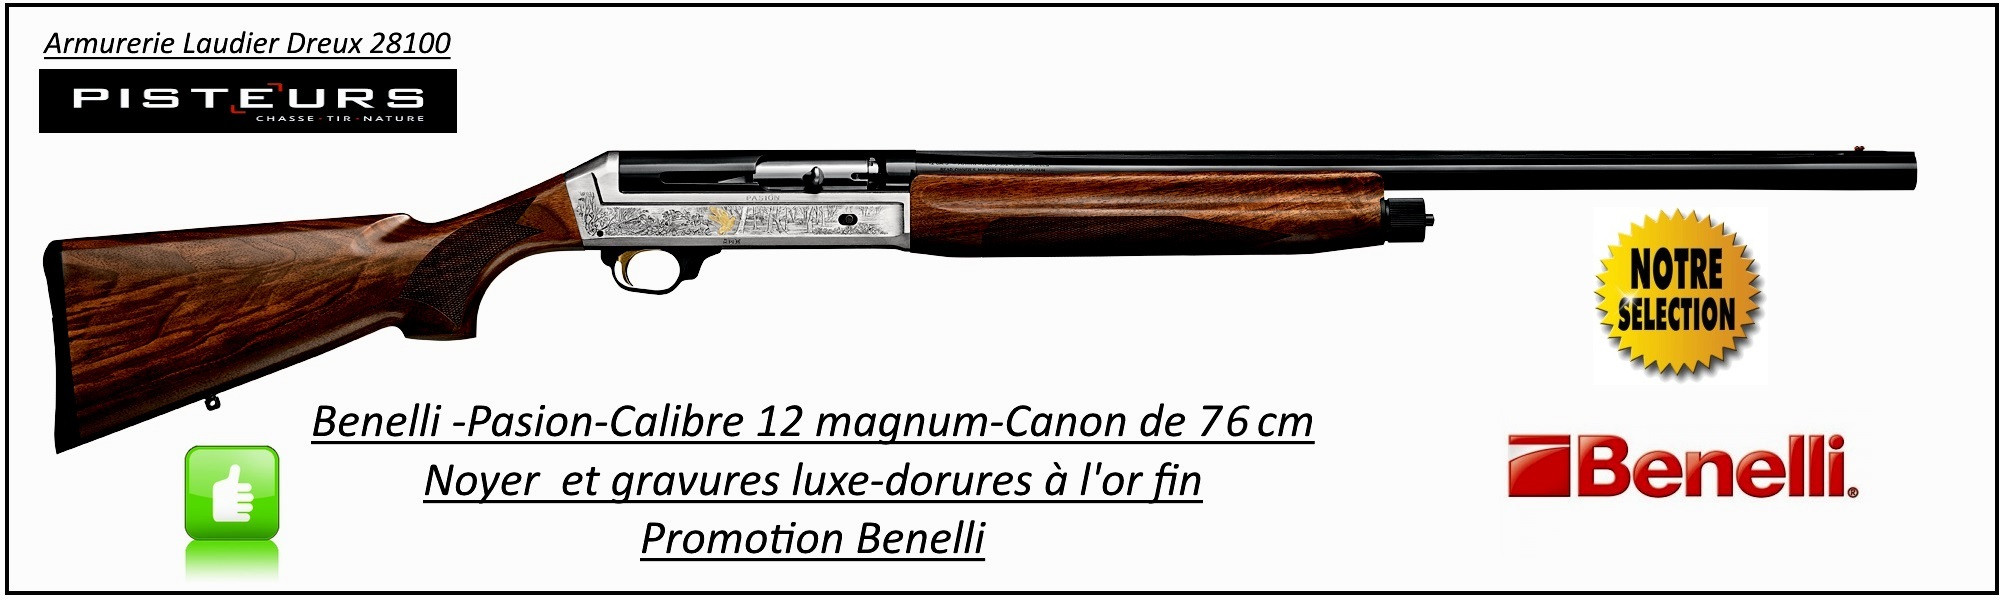 Semi automatique- Benelli-Pasion-Gravé-Cal 12/magnum-Canon 76 cm-Crosse noyer 3 étoiles-Chokes inter-Éprouvé B.Acier-"Super Promotion"-Ref benelli-pasion